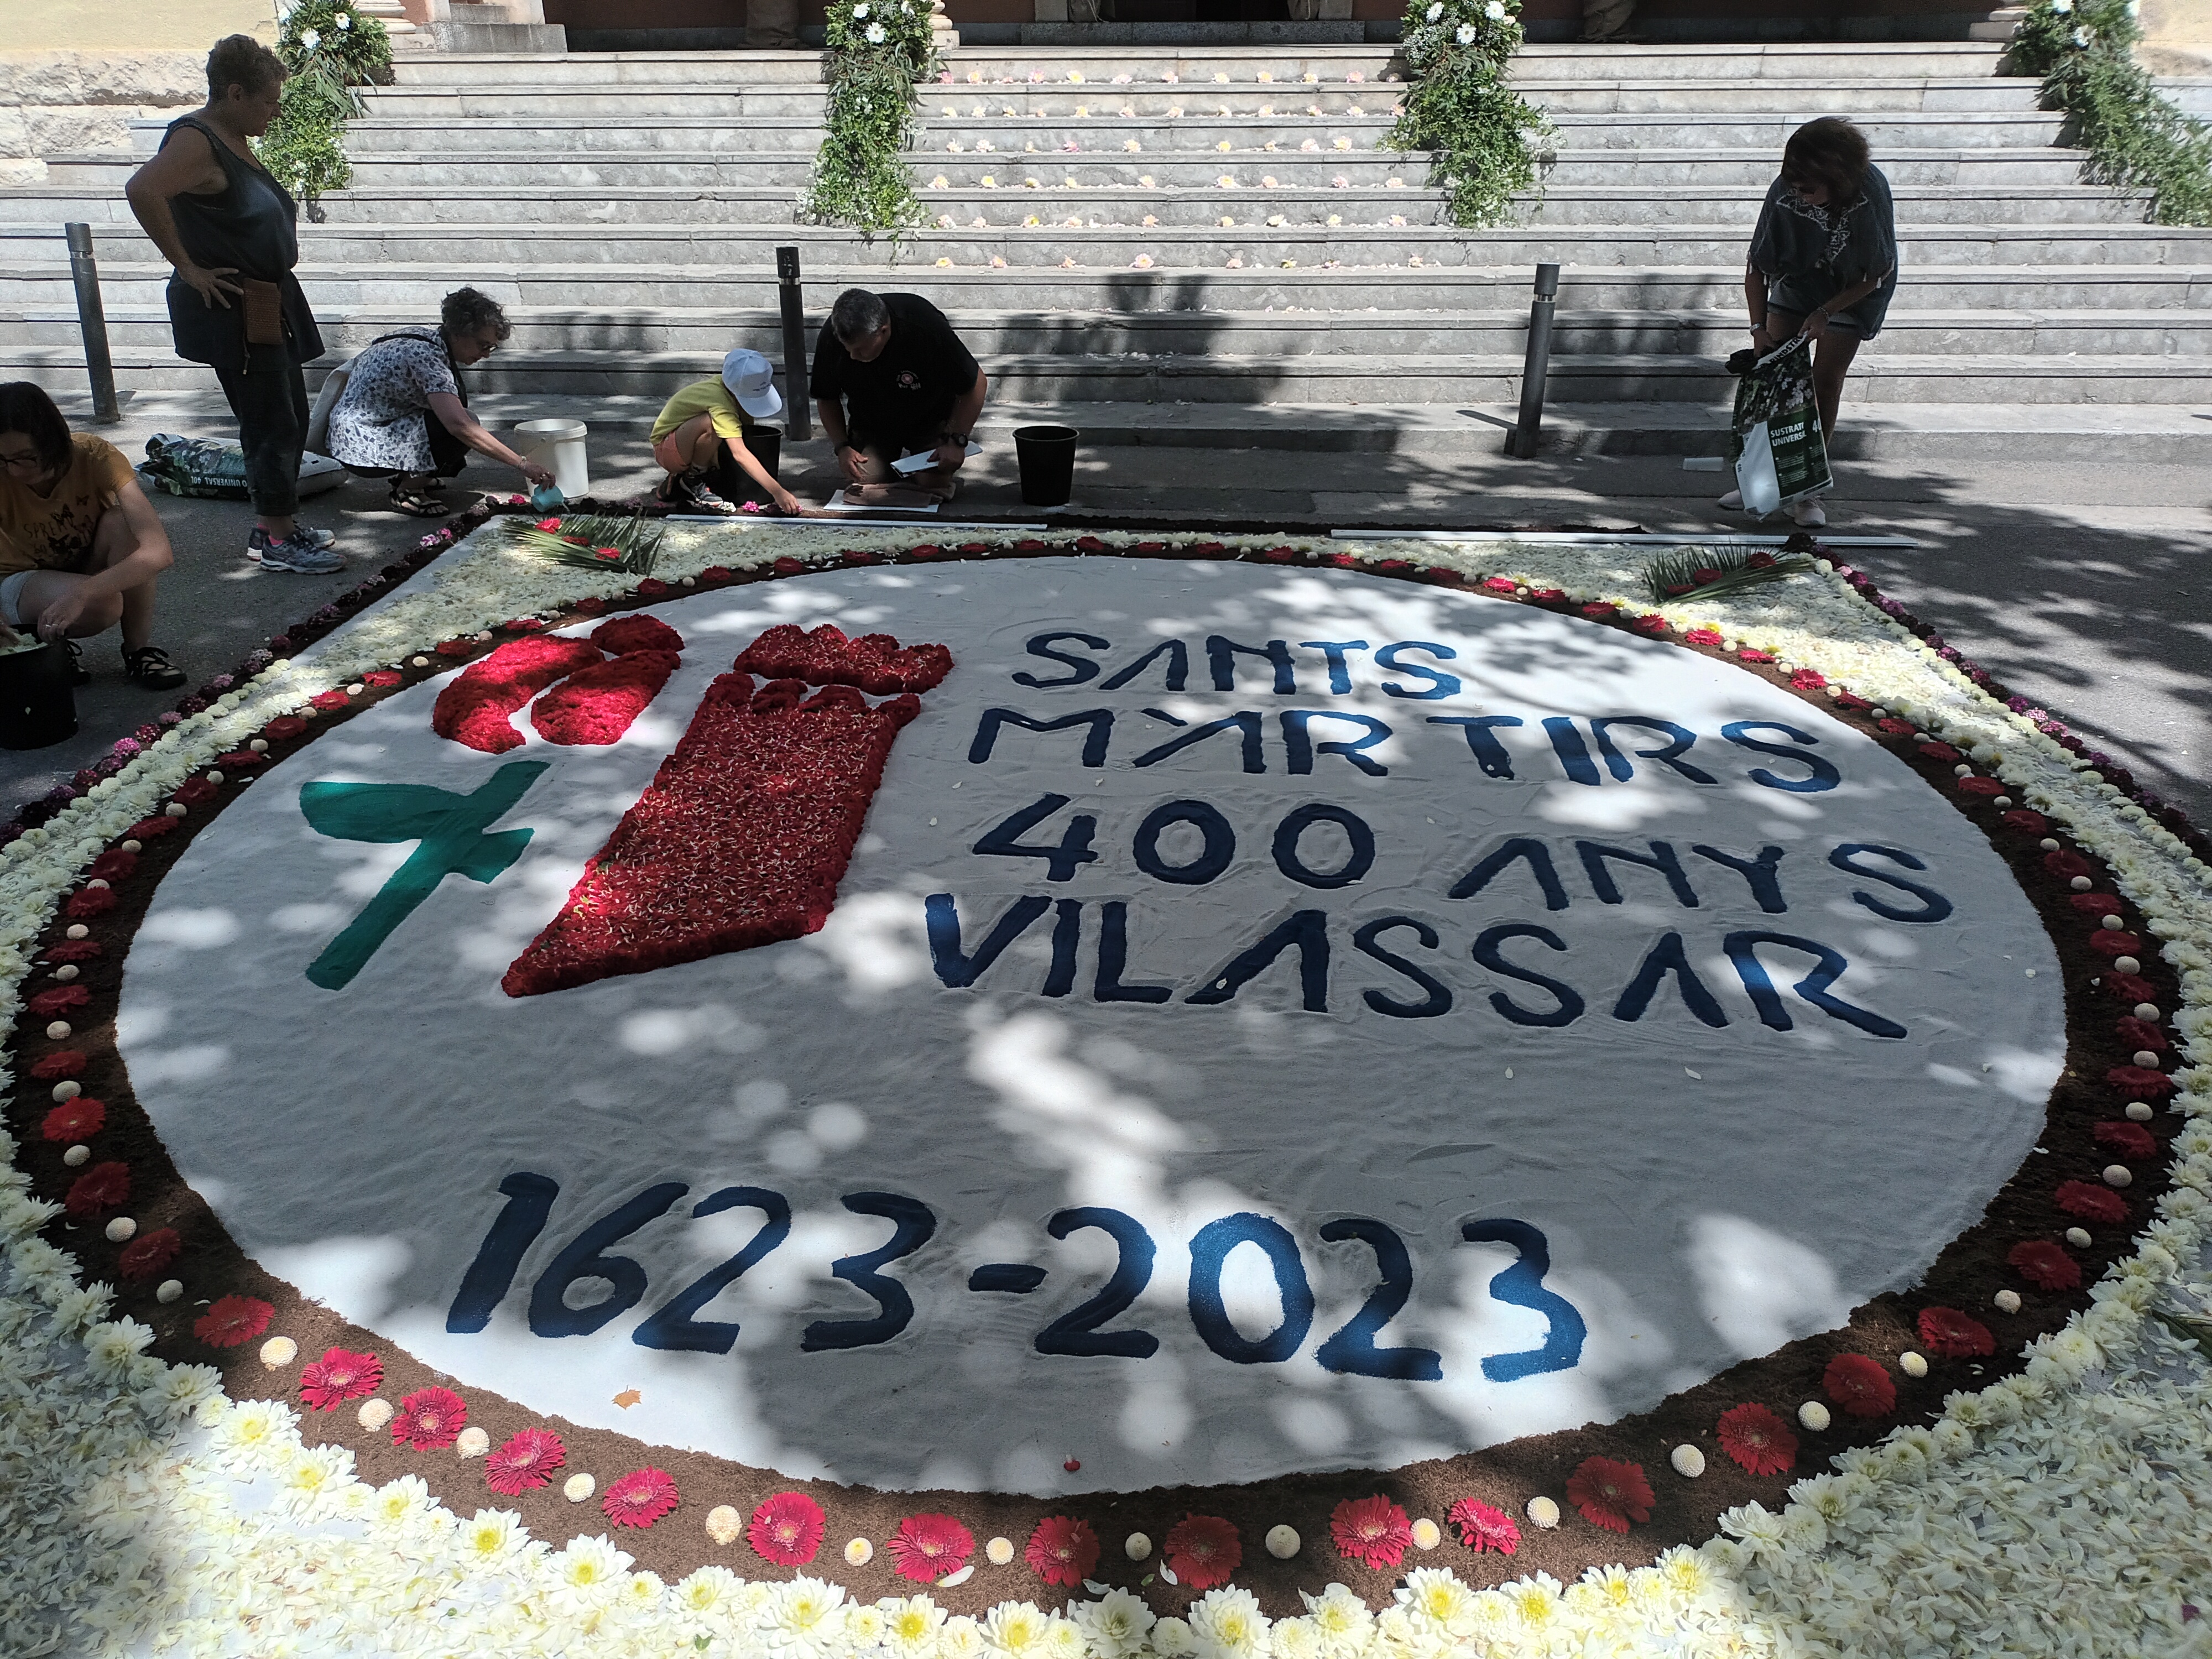 Vilassar commemora els 400 anys de l'arribada de les relíquies dels Sants Màrtirs 